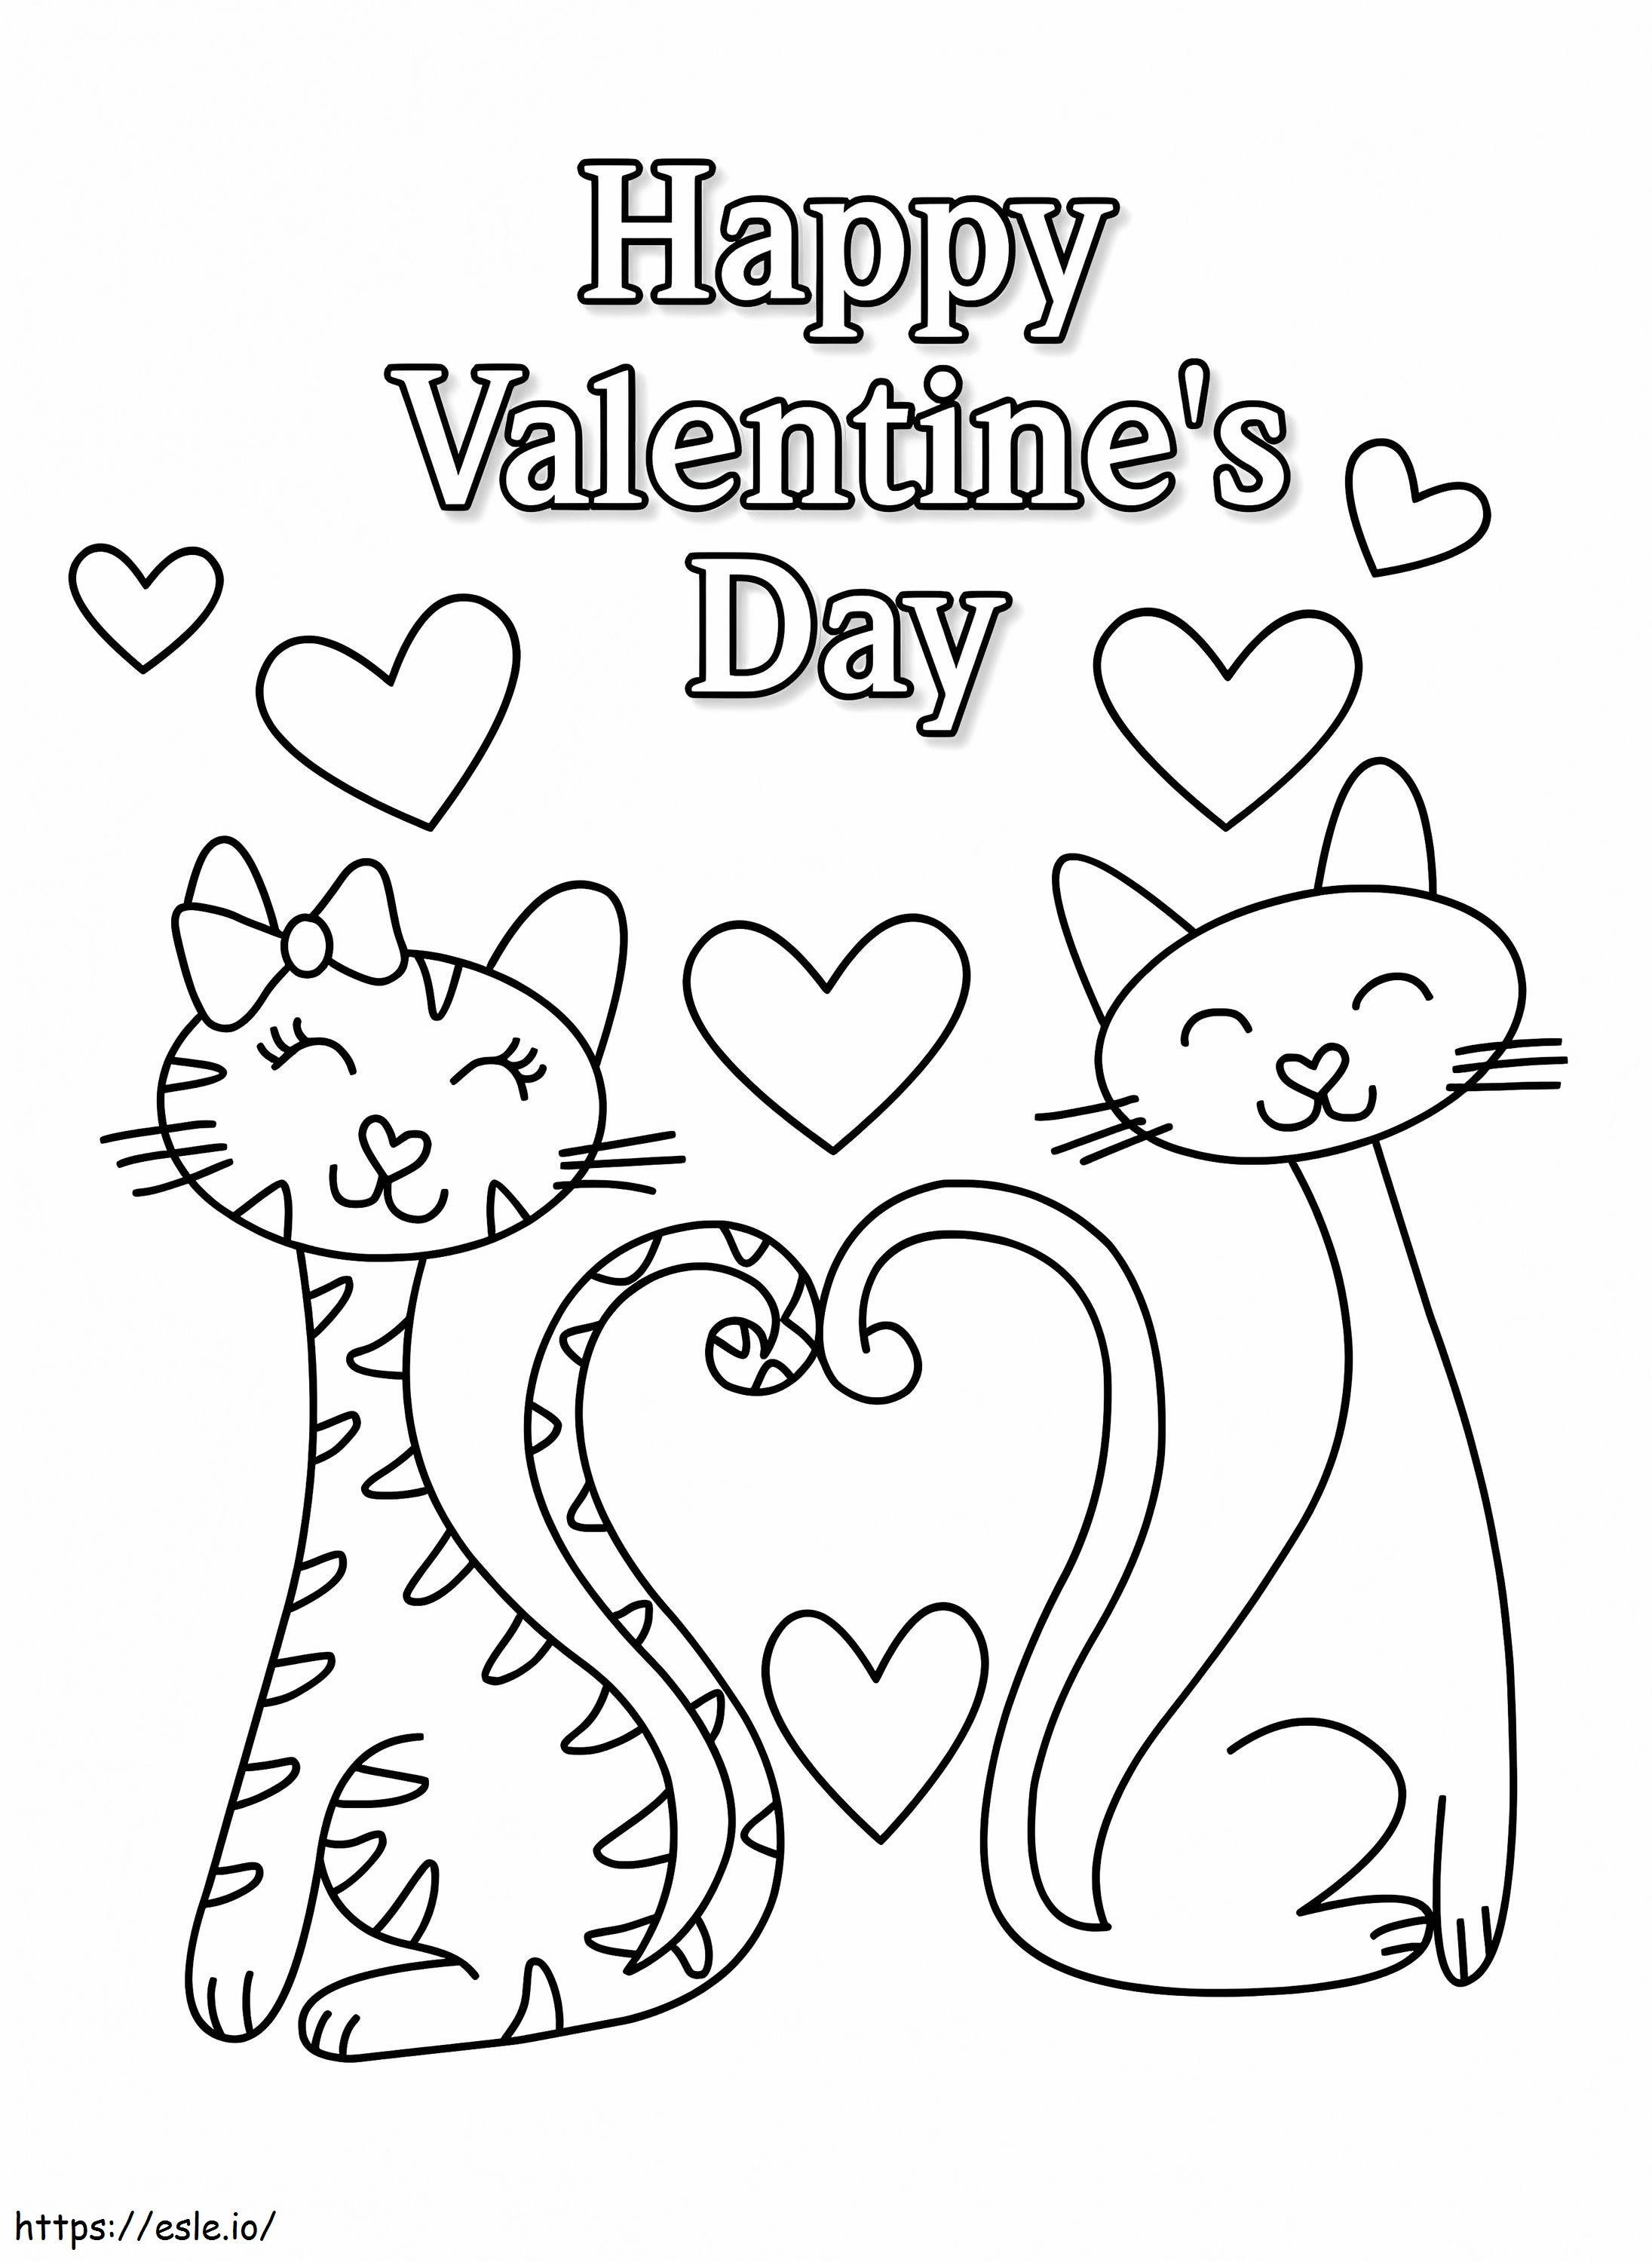 Happy Valentines Day Malblatt Schildkröte Tagebuch Seite Bilder von 1 748X1024 ausmalbilder